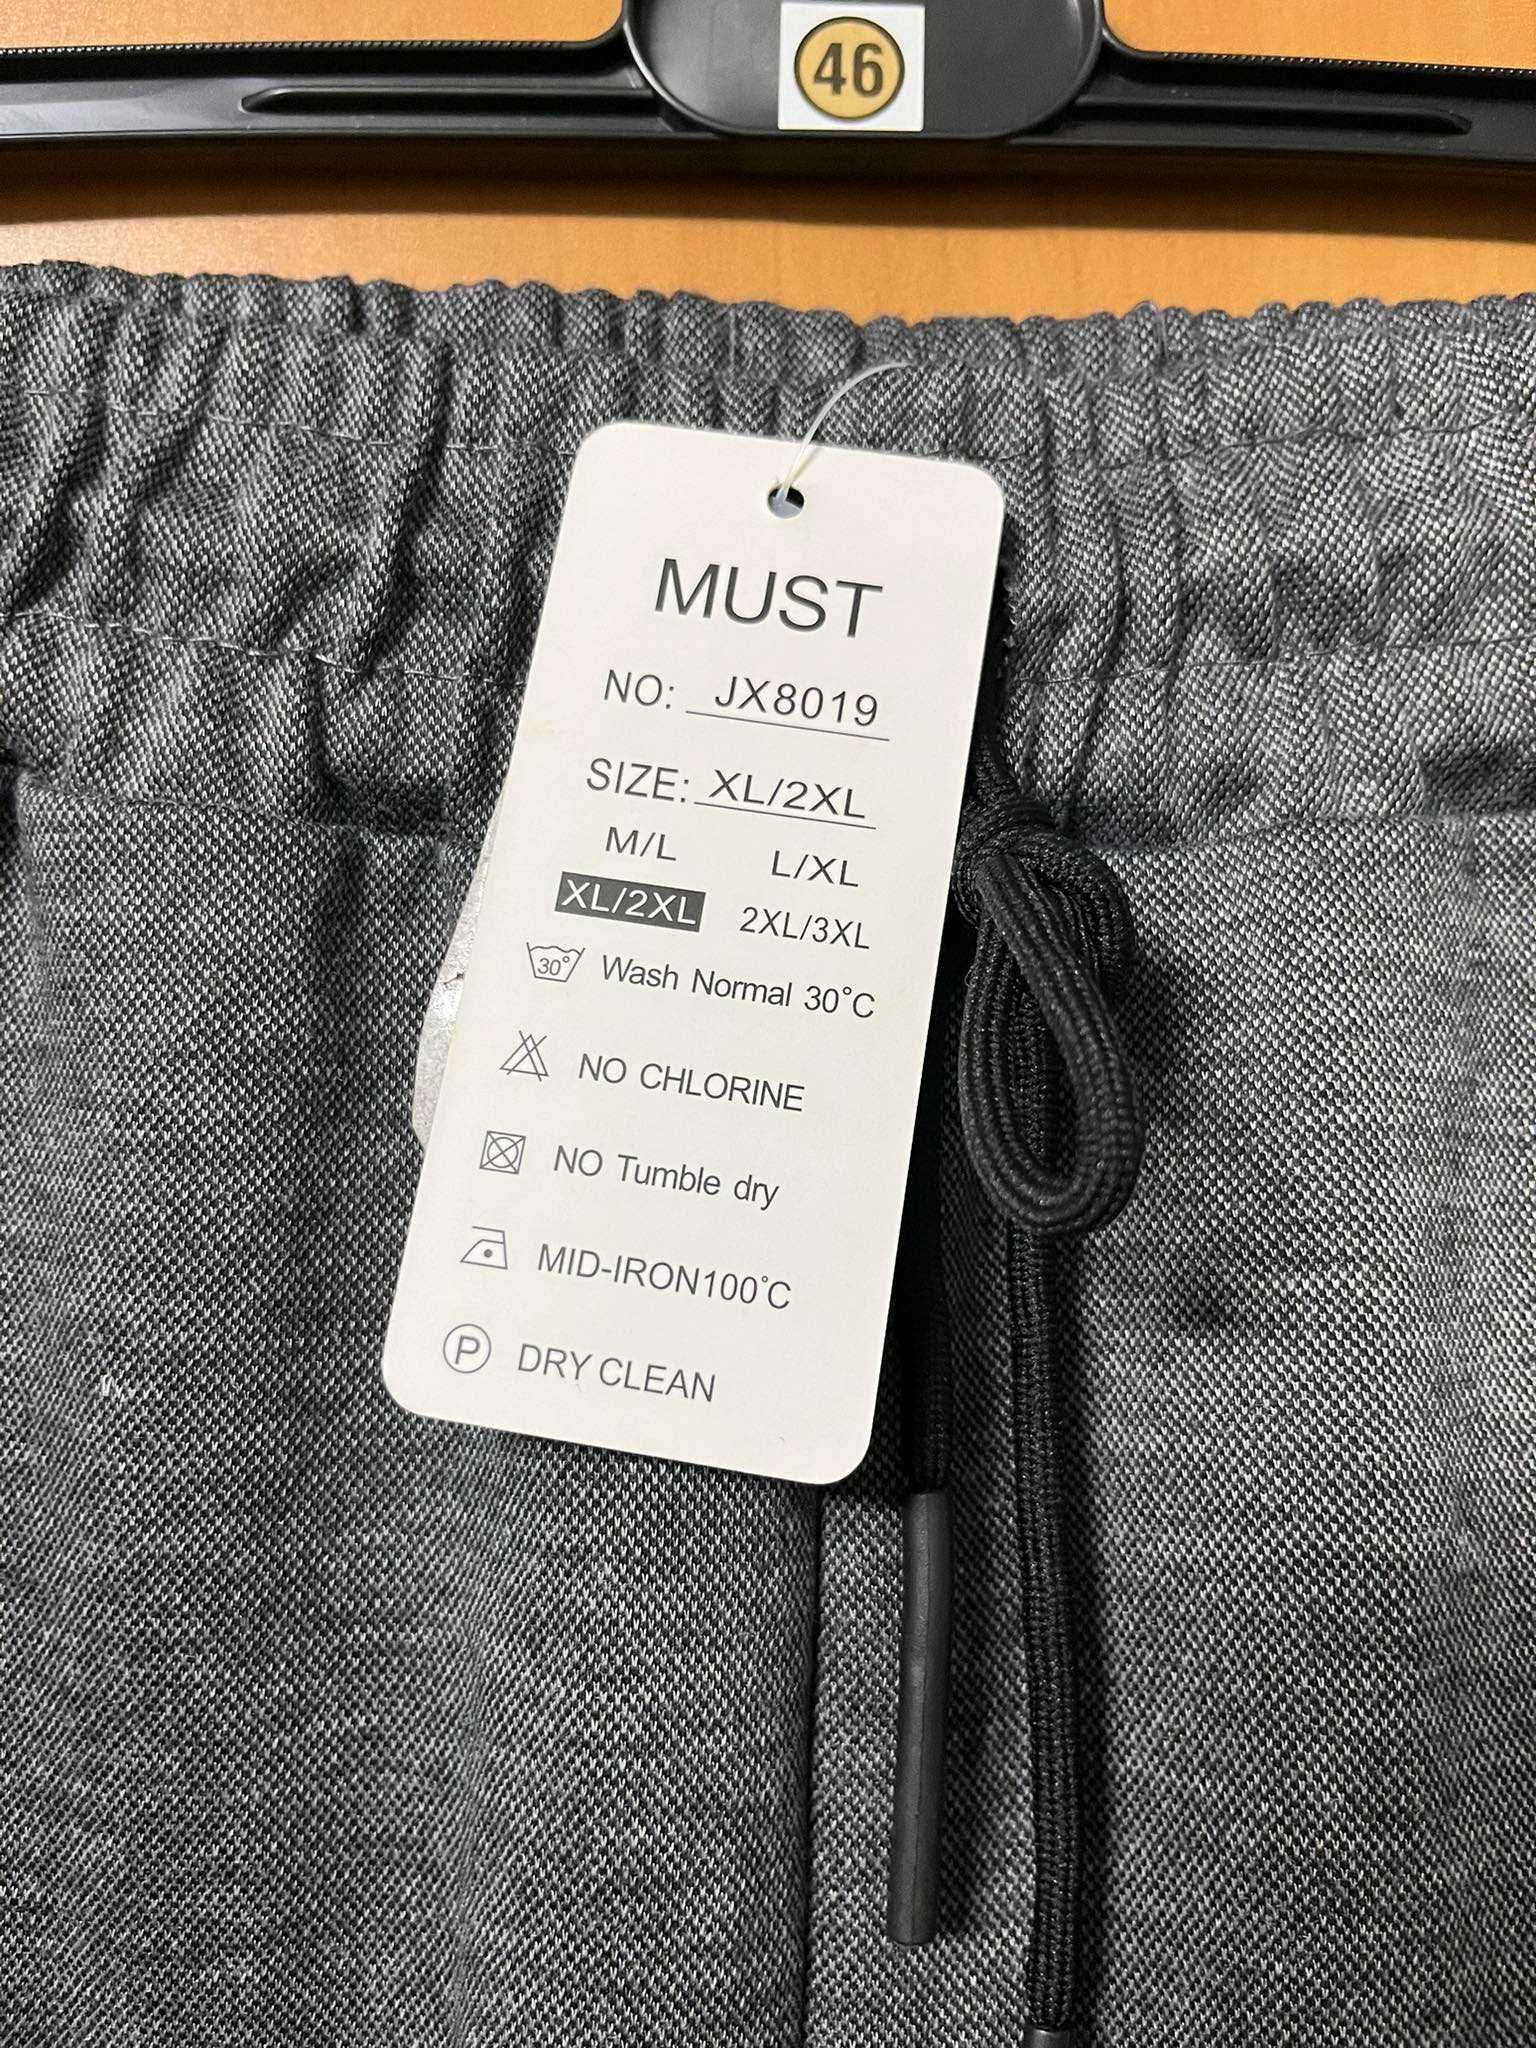 Nowe spodnie dresowe męskie Must - XL/2XL